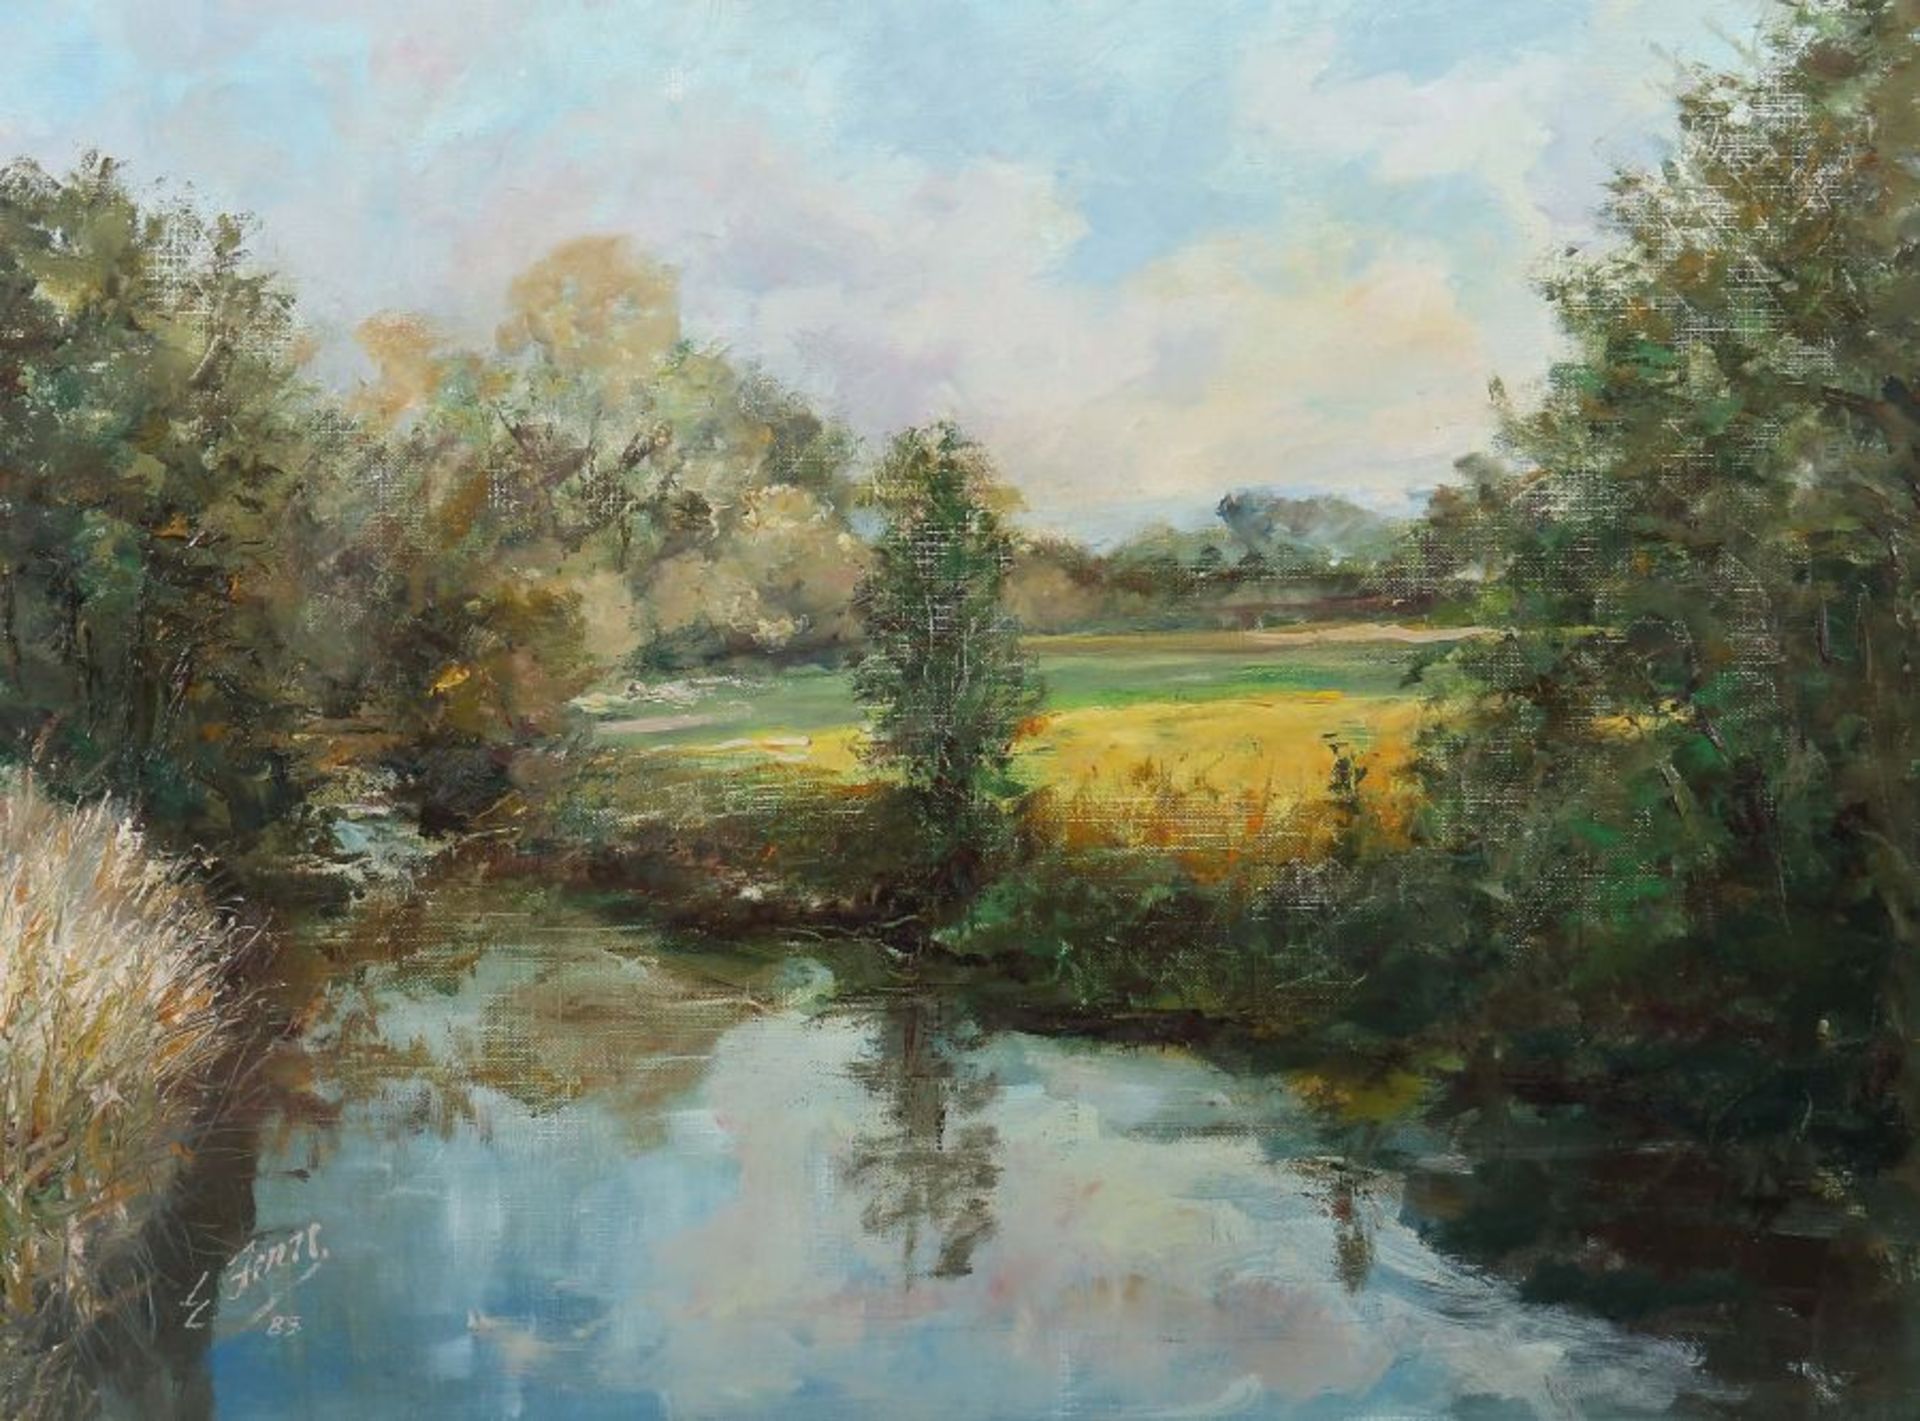 Maler des 20. Jh. "Sommerlicher Flusslauf" mit Bäumen und Gebüsch, dahinter Wiesen und Wald, unten